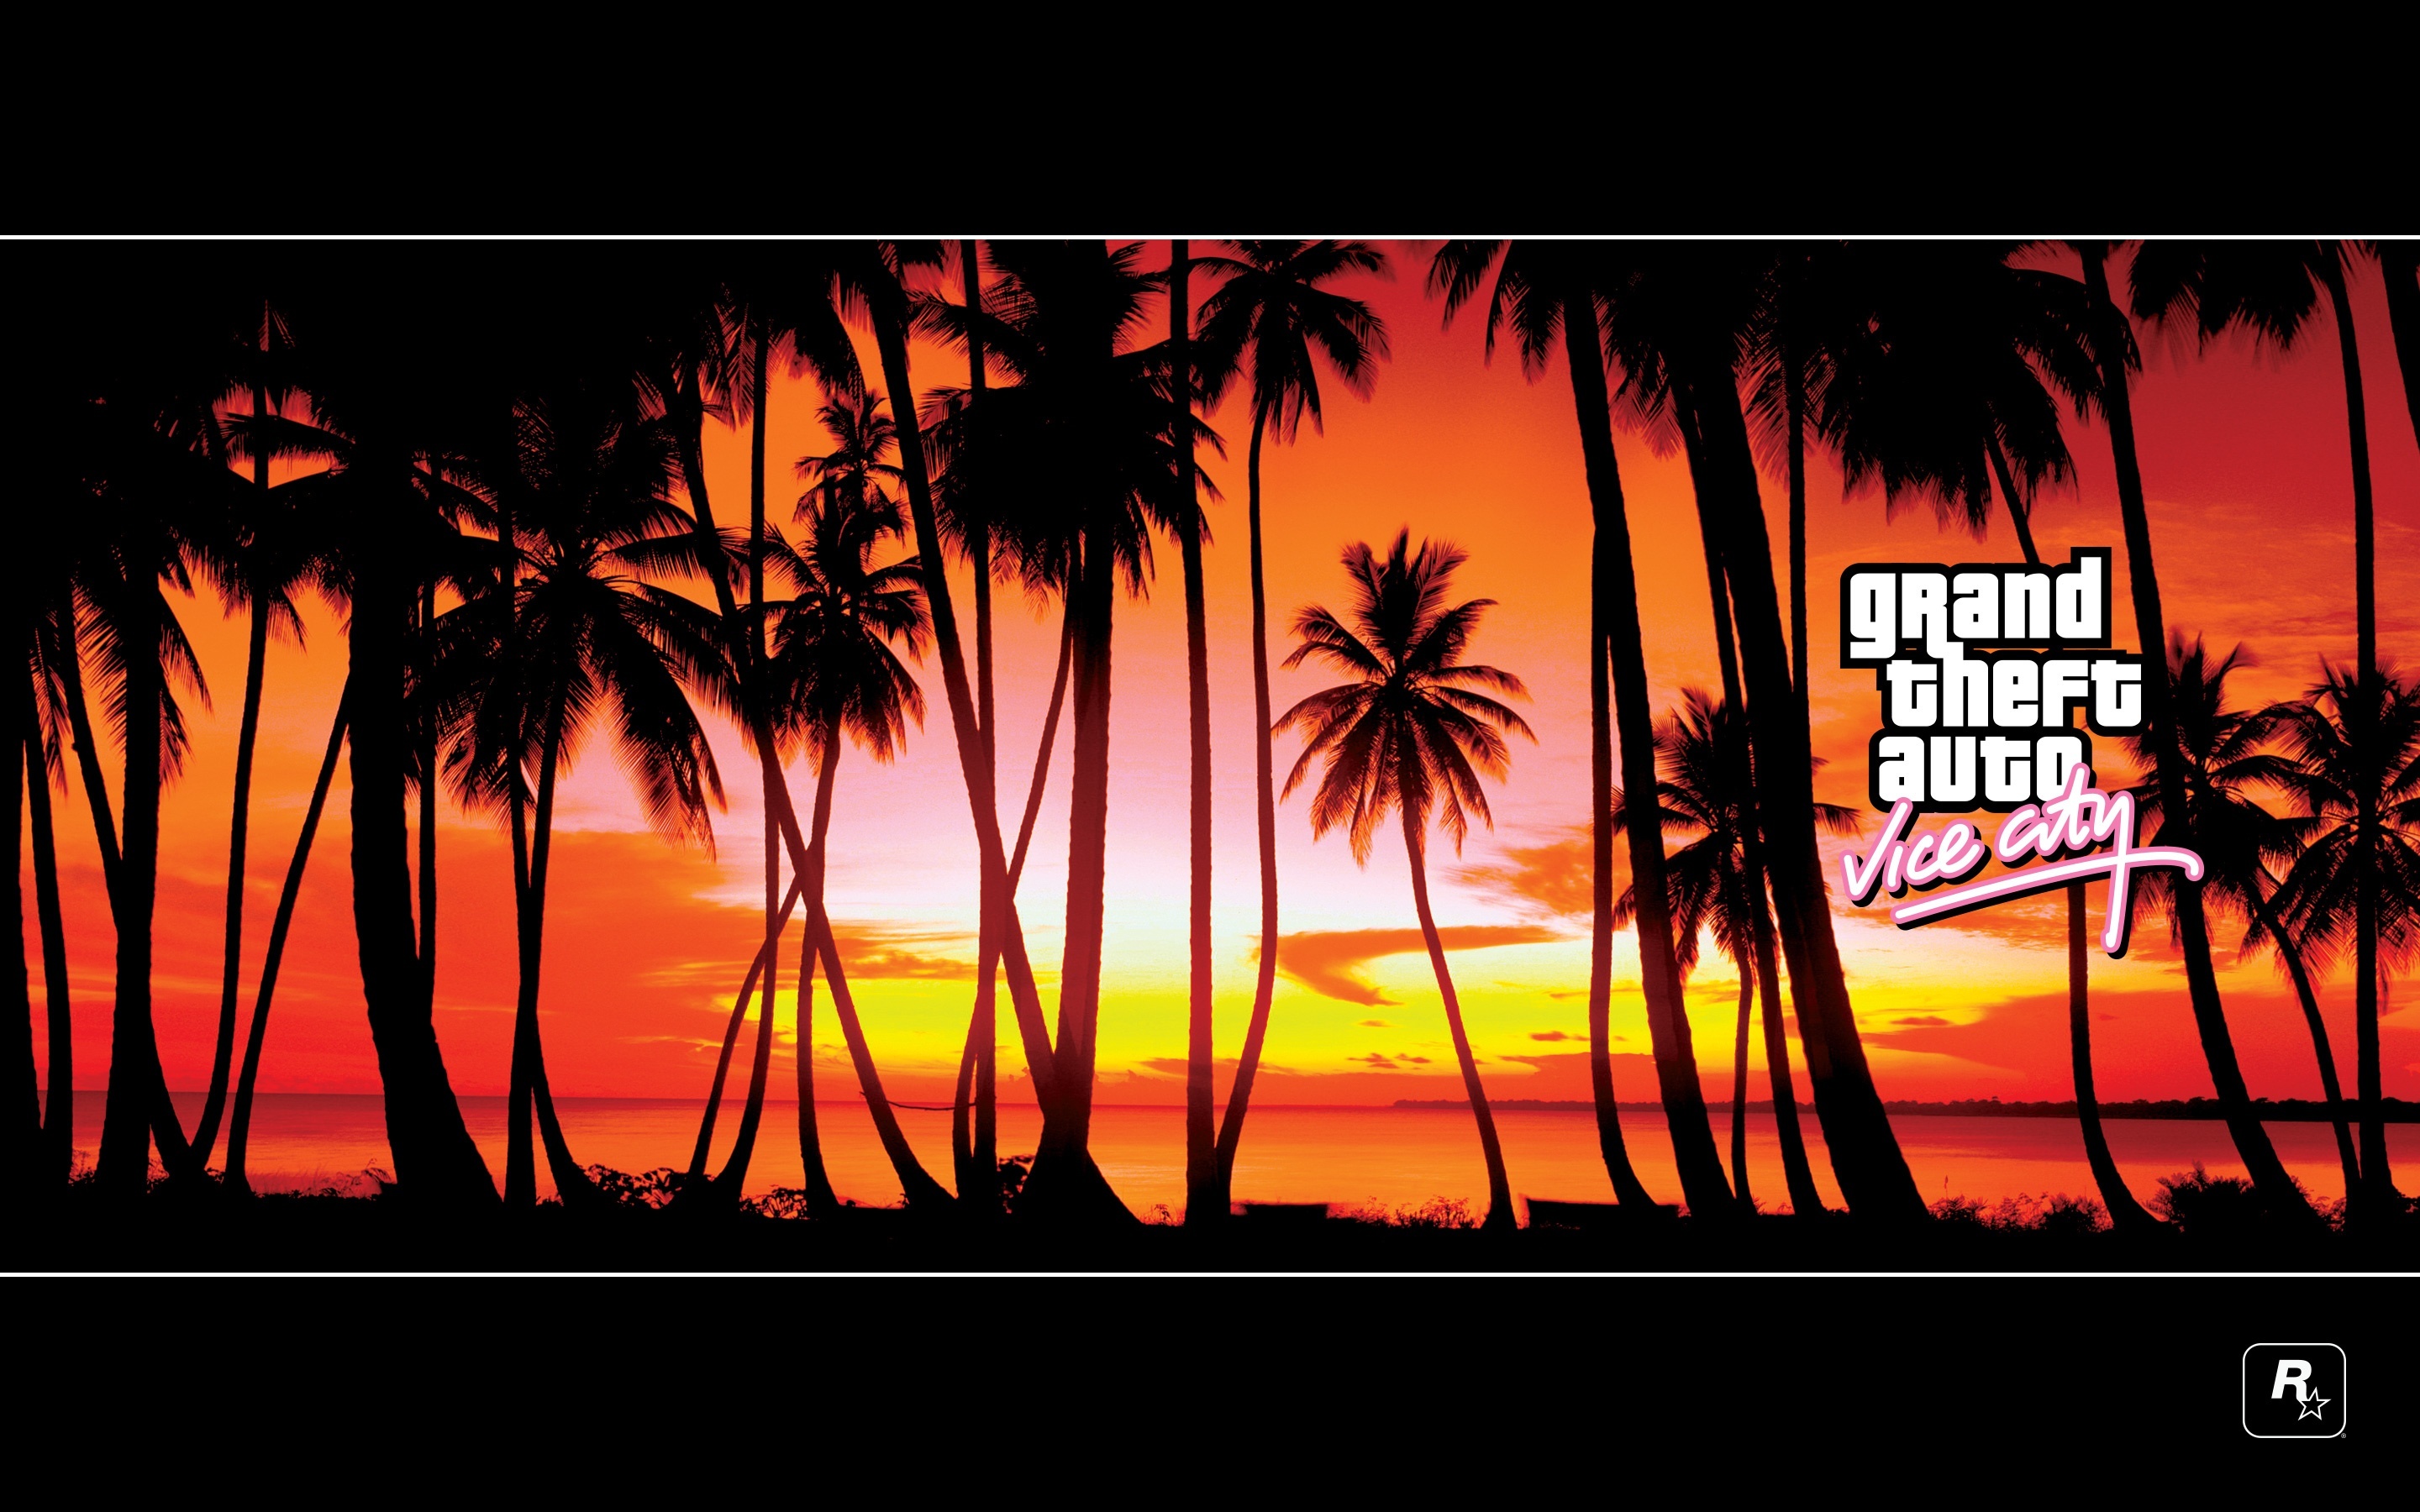 Laden Sie Grand Theft Auto (Gta) HD-Desktop-Hintergründe herunter